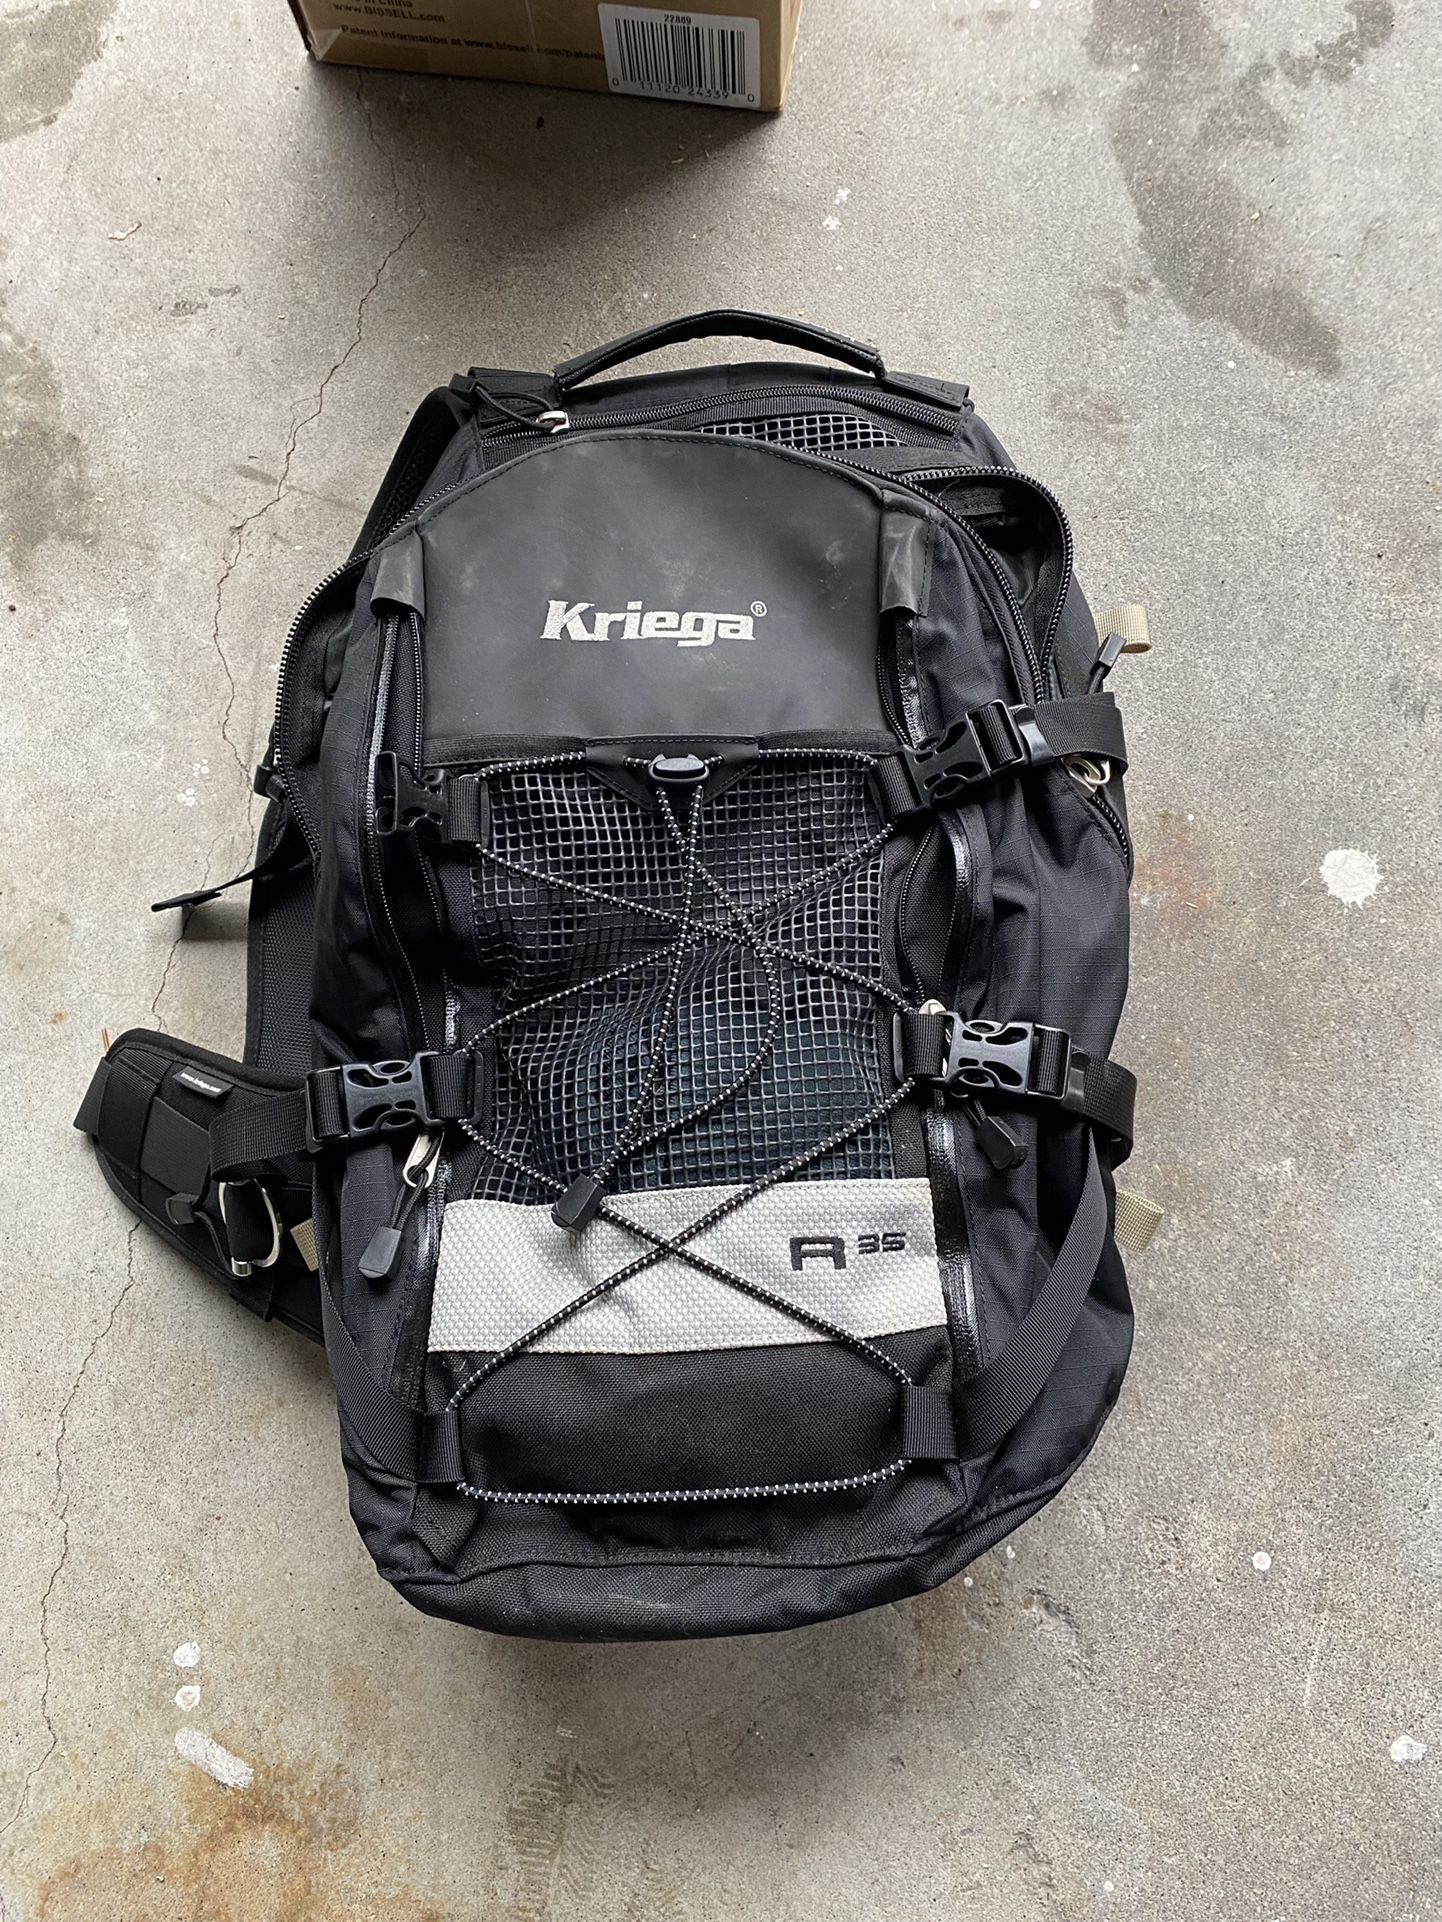 Kriega R35 Backpack 